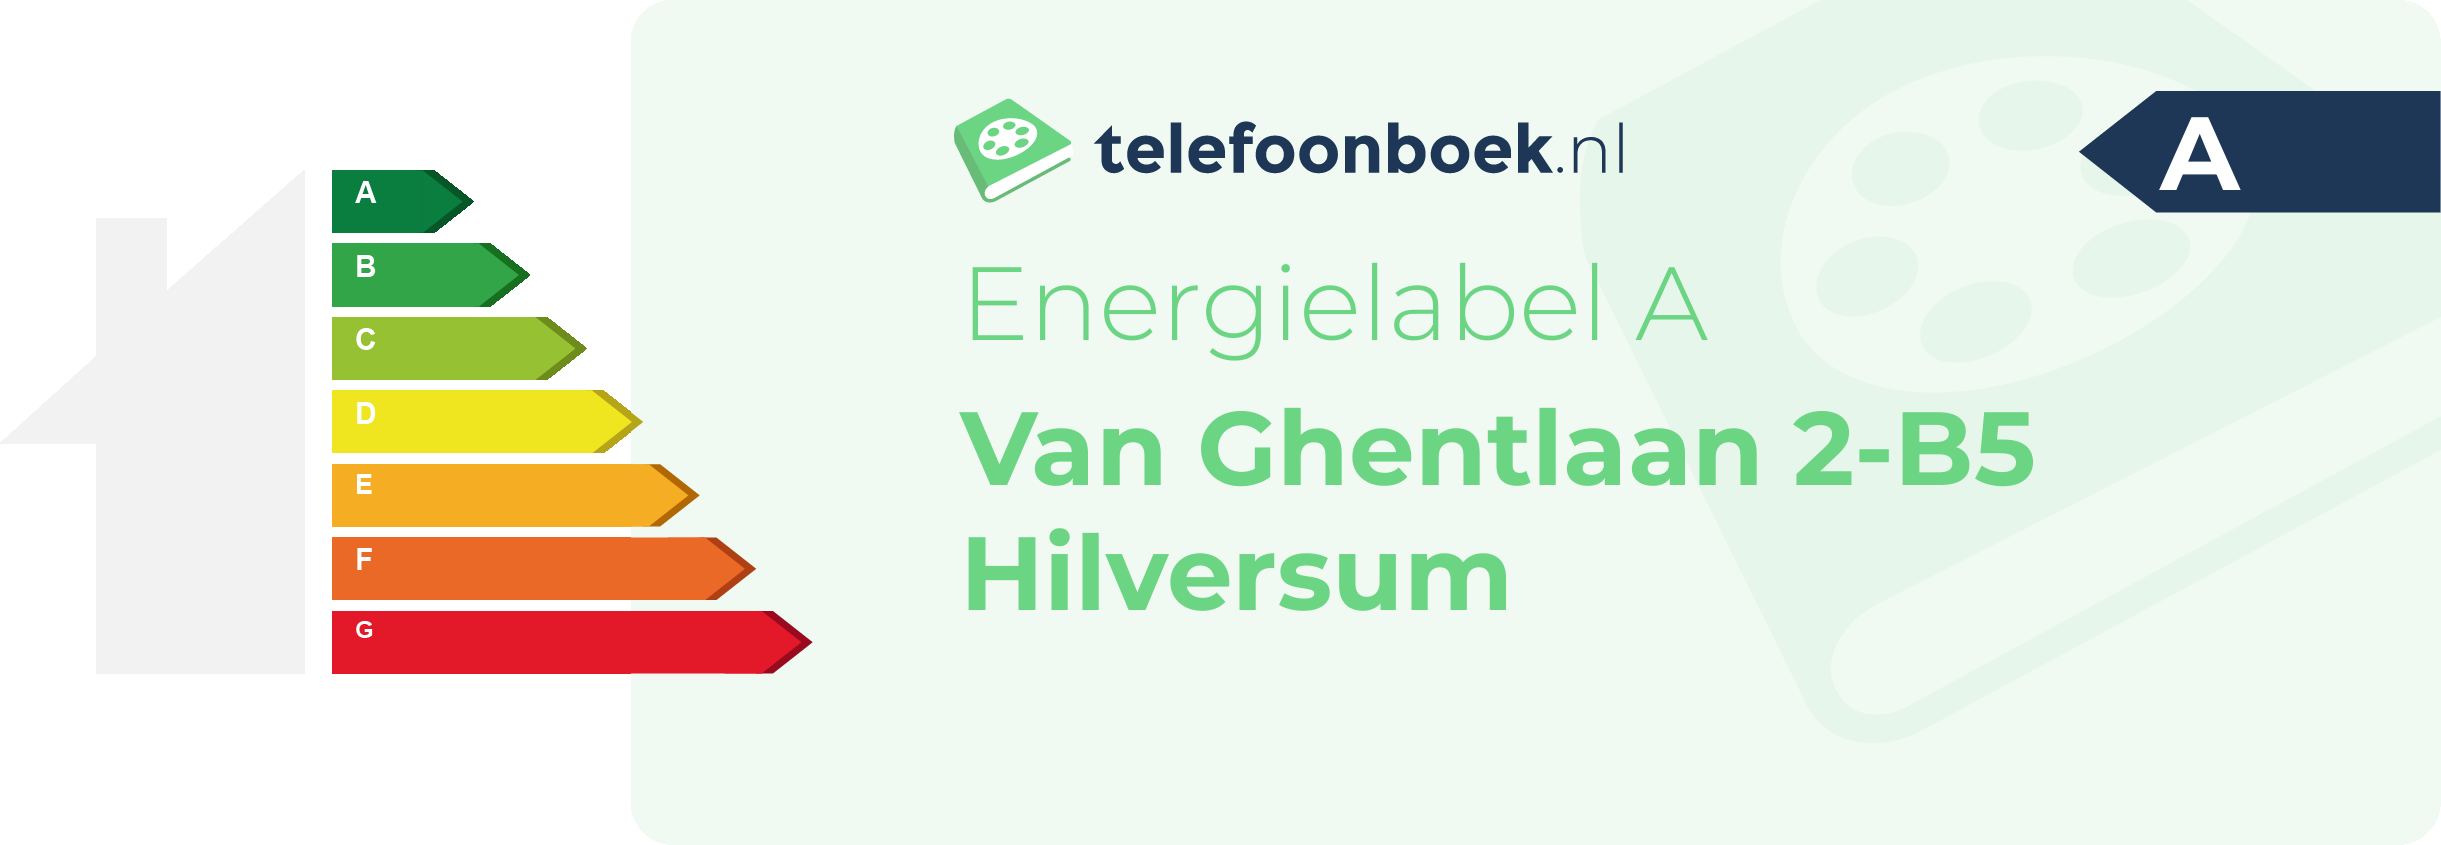 Energielabel Van Ghentlaan 2-B5 Hilversum